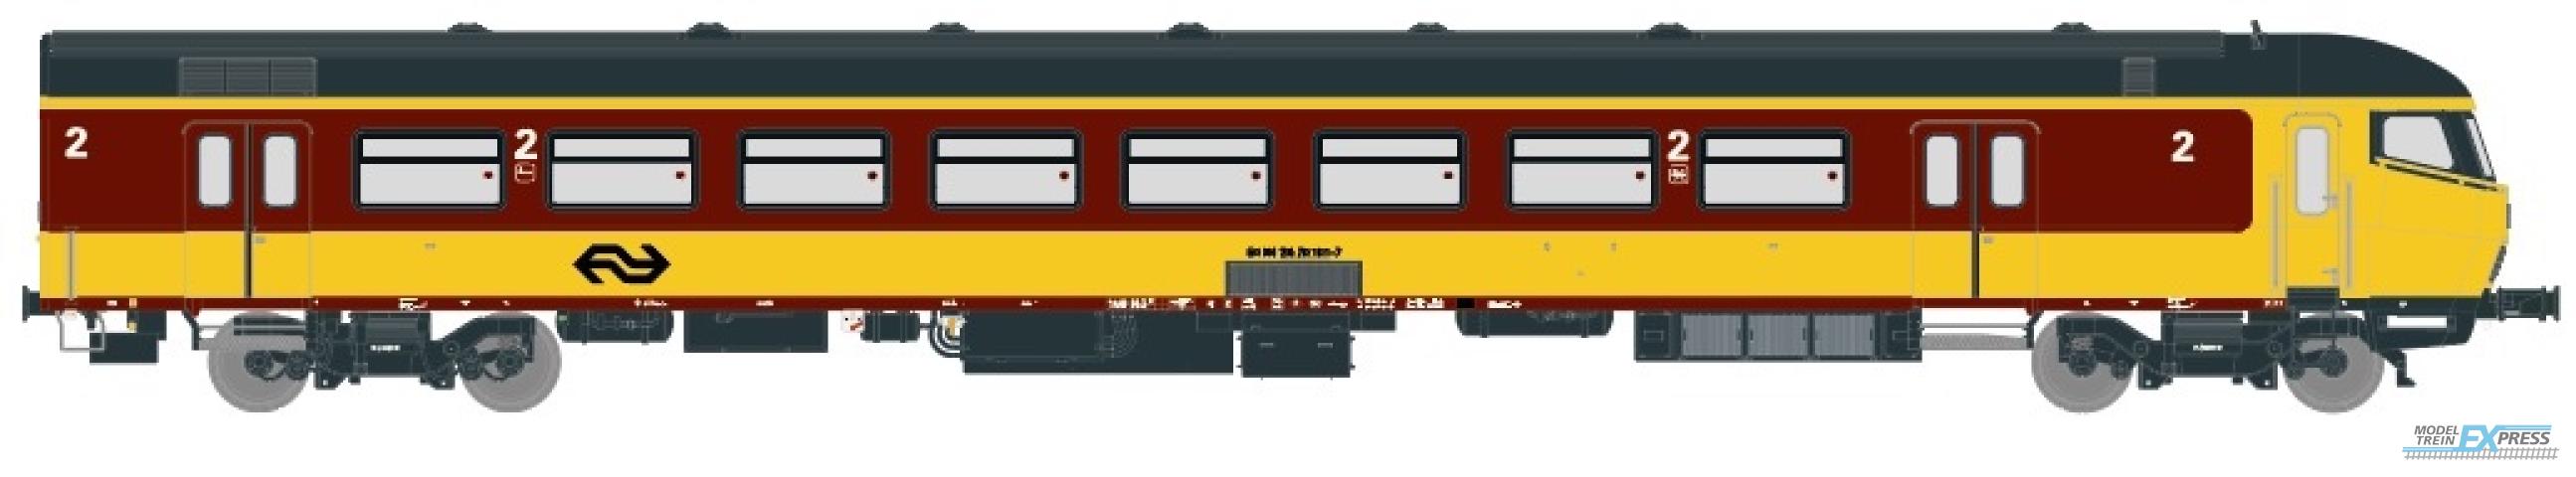 Exact-train 11194 NS ICR (Originalversion) für den Beneluxzug nach Belgien Steuerwagen Bs ( Farbe Gelb / Rot) (AC Marklin), Ep. IV